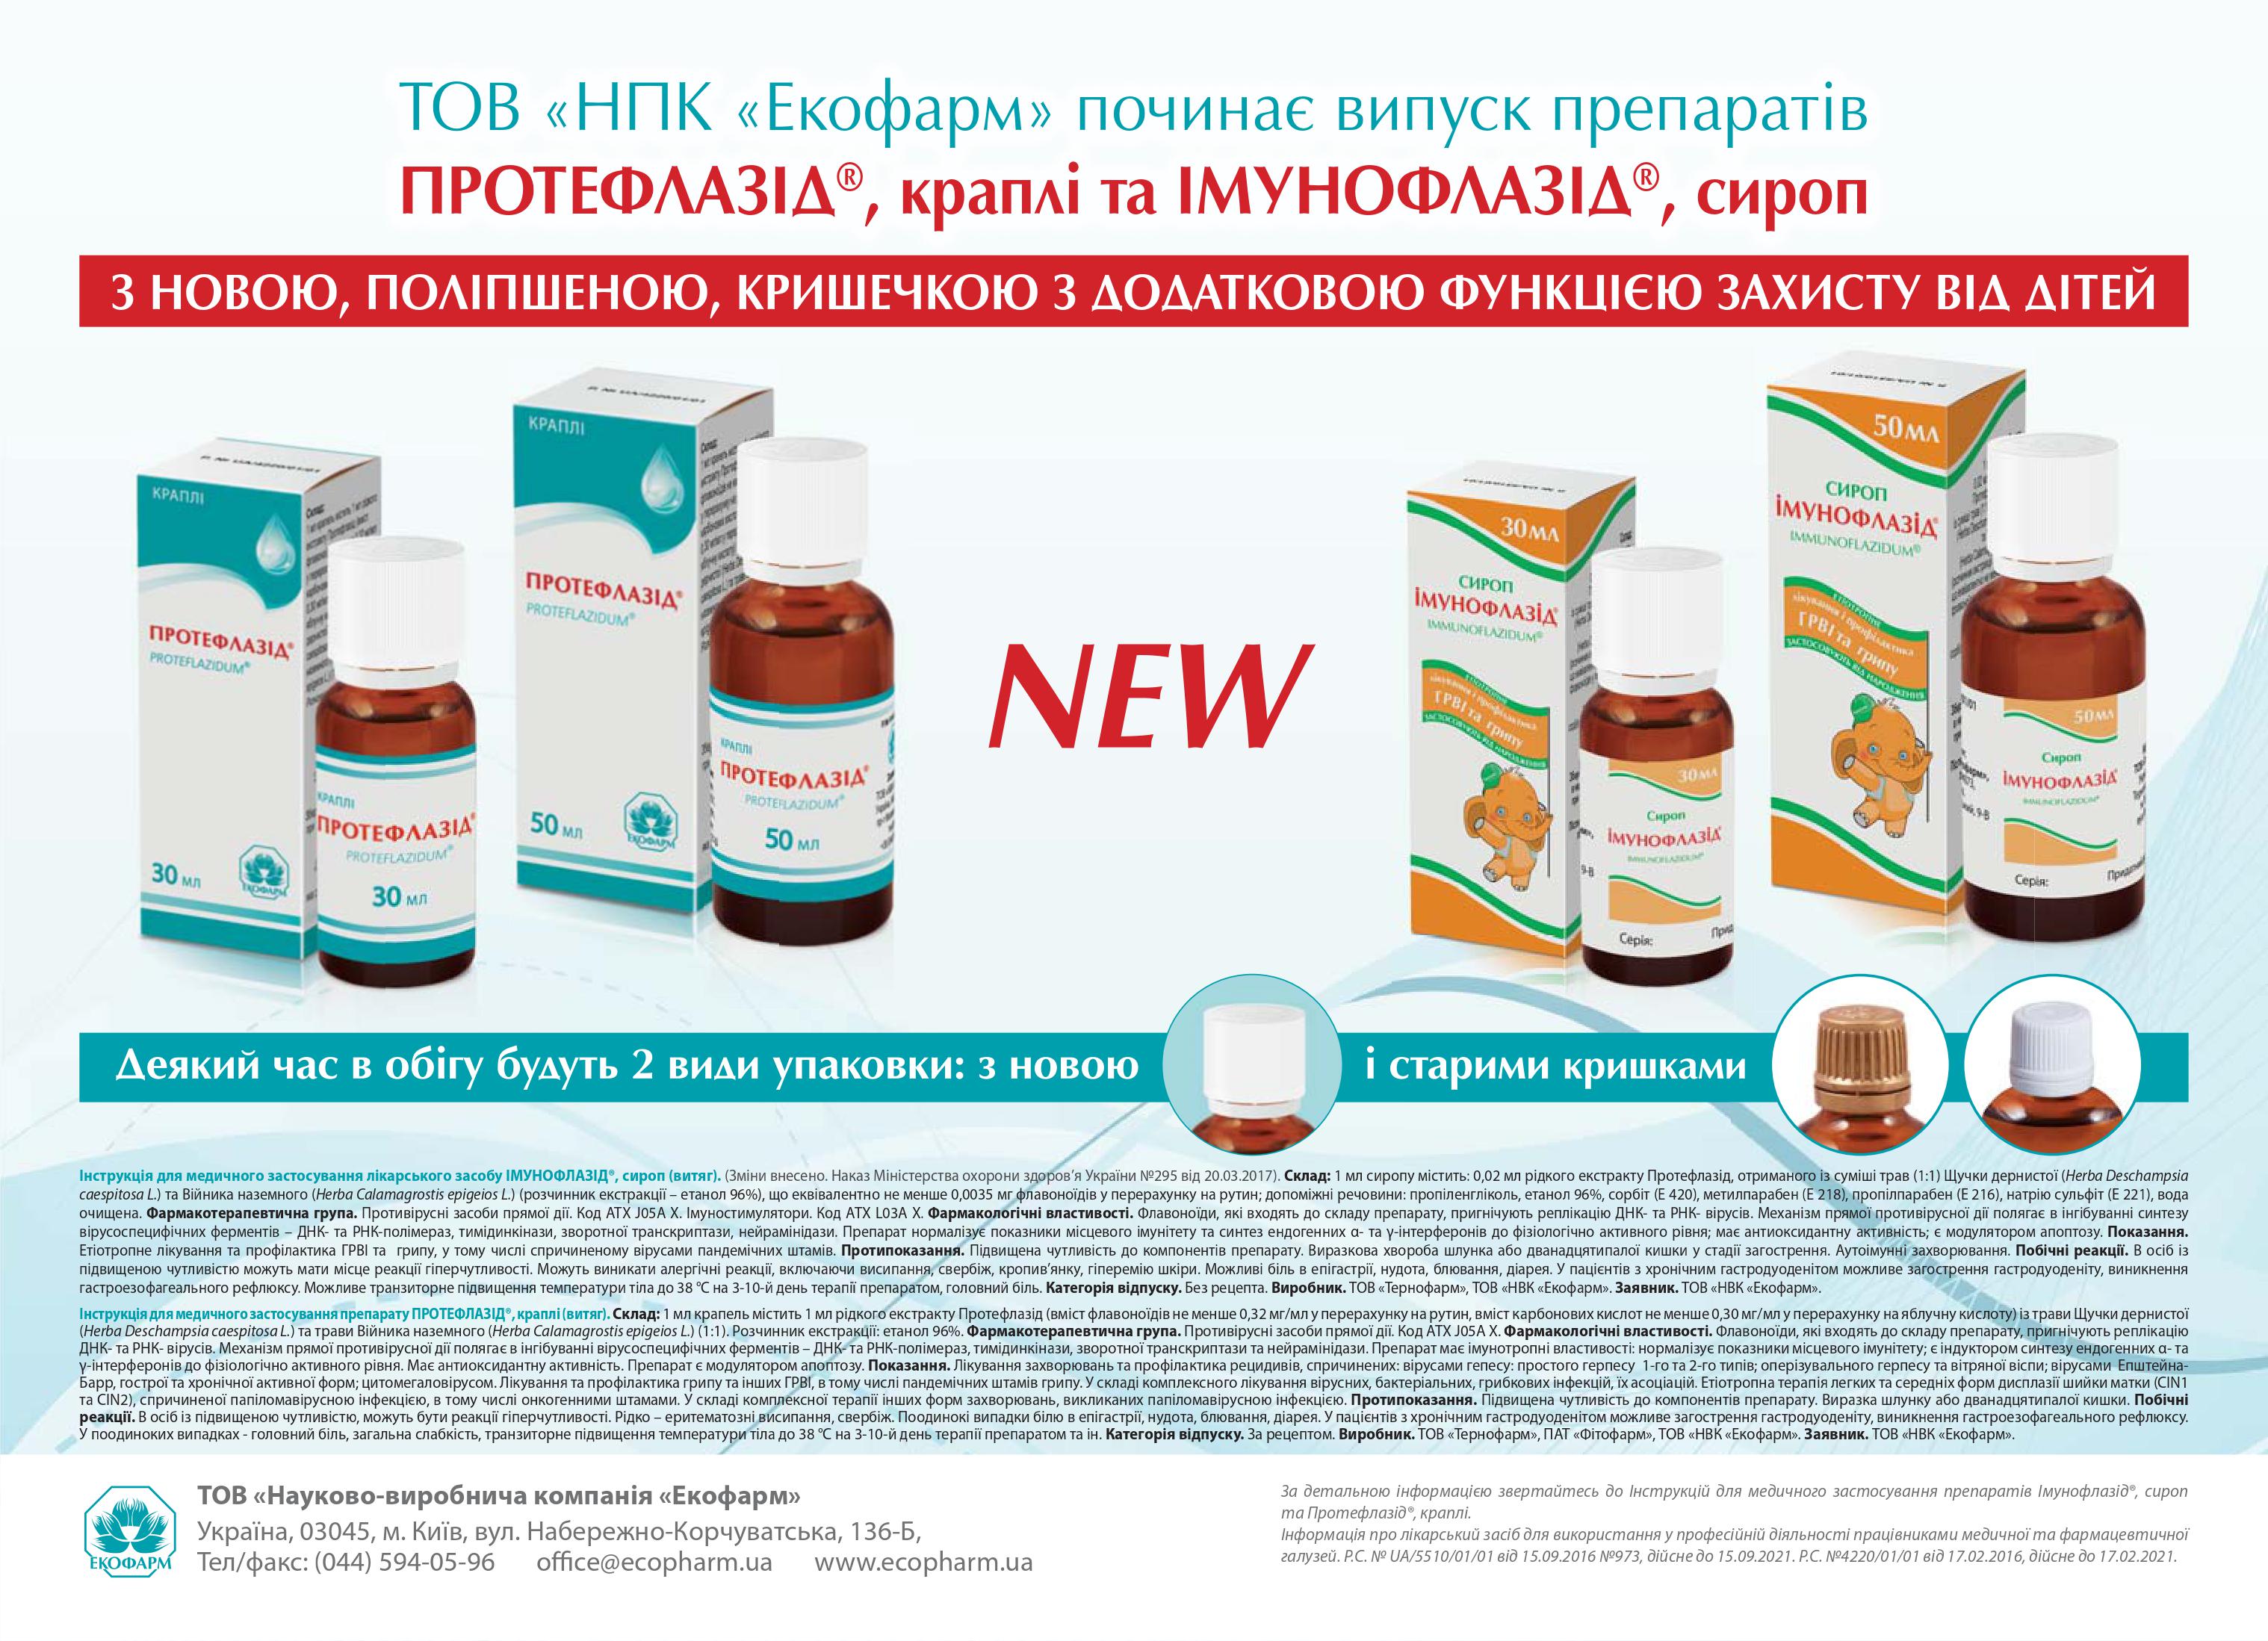 Компанія ТОВ «НВК «Екофарм» поліпшила упаковки препаратів